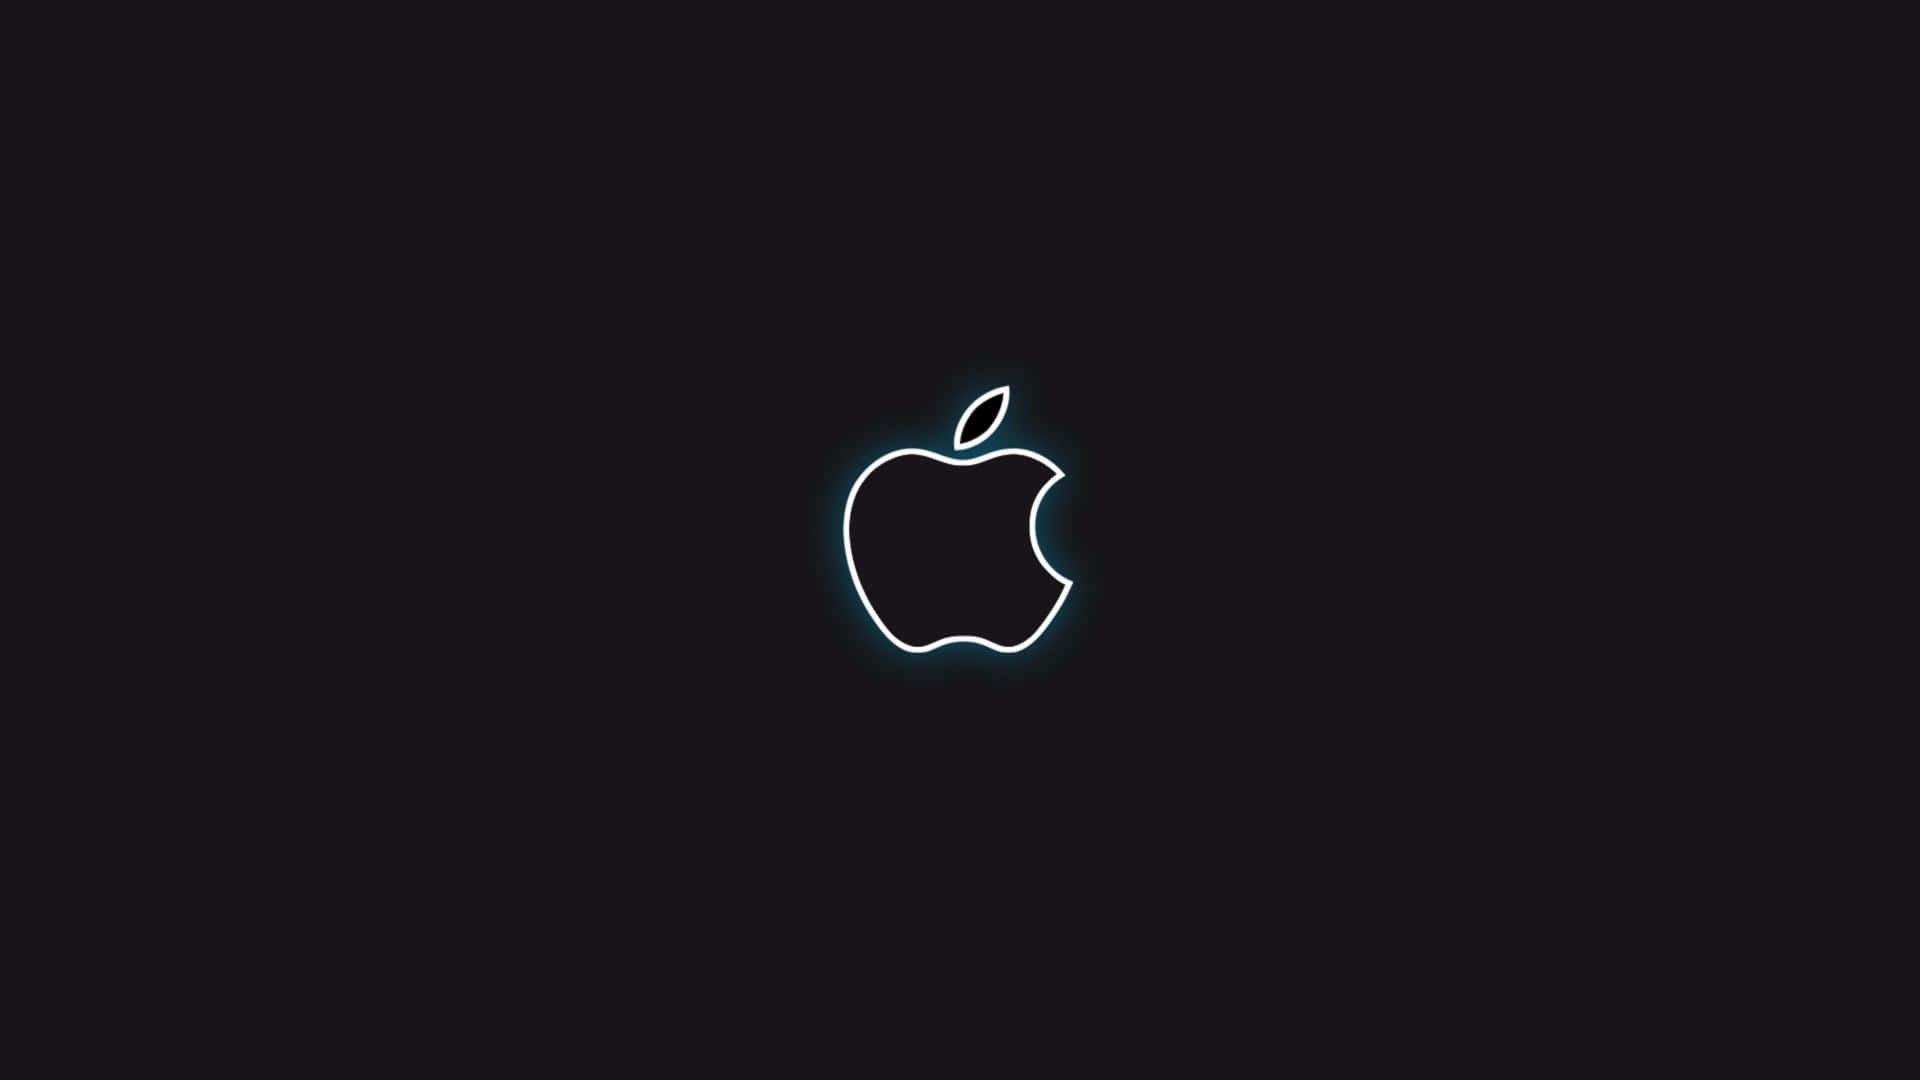 Logotipode Apple Negro Con Contorno Blanco. Fondo de pantalla